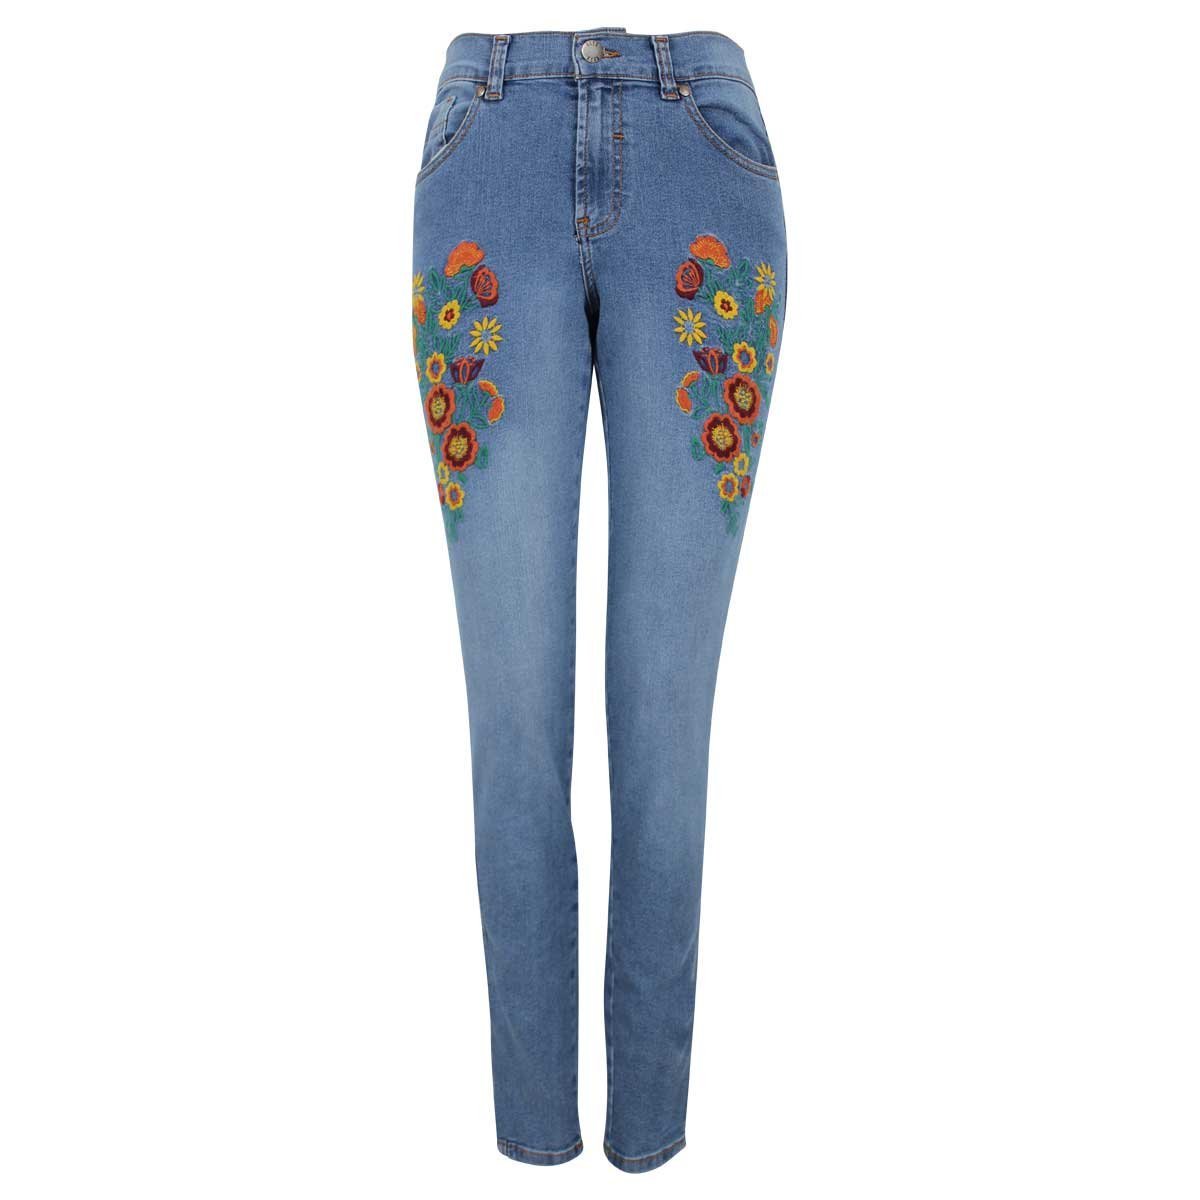 Jeans con Bordado Flores Elle